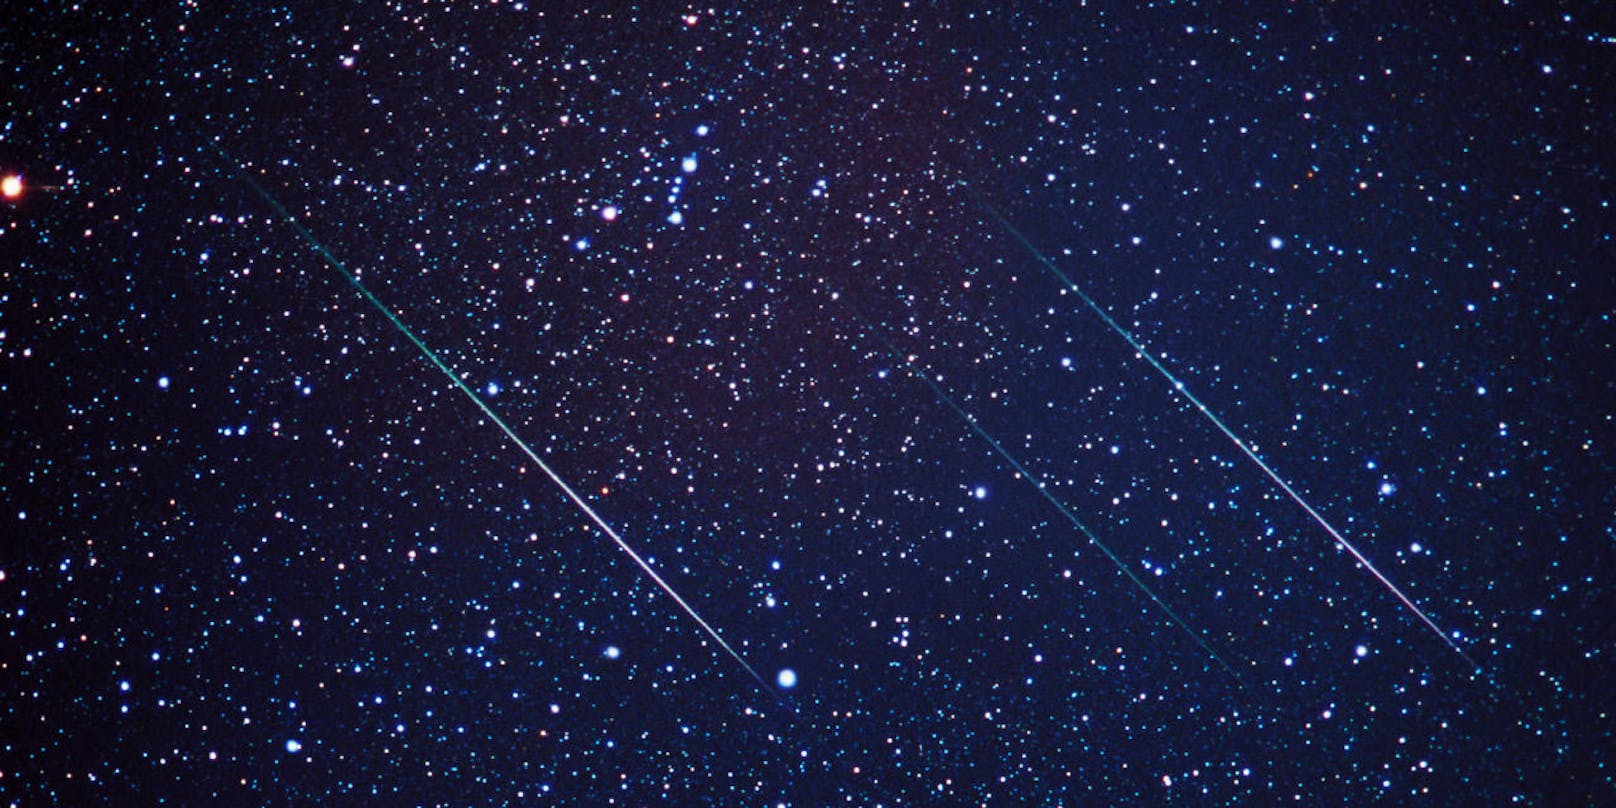 Der Meteoritenschauer der Leoniden ist jedes Jahr um den 17. November zu beobachten.